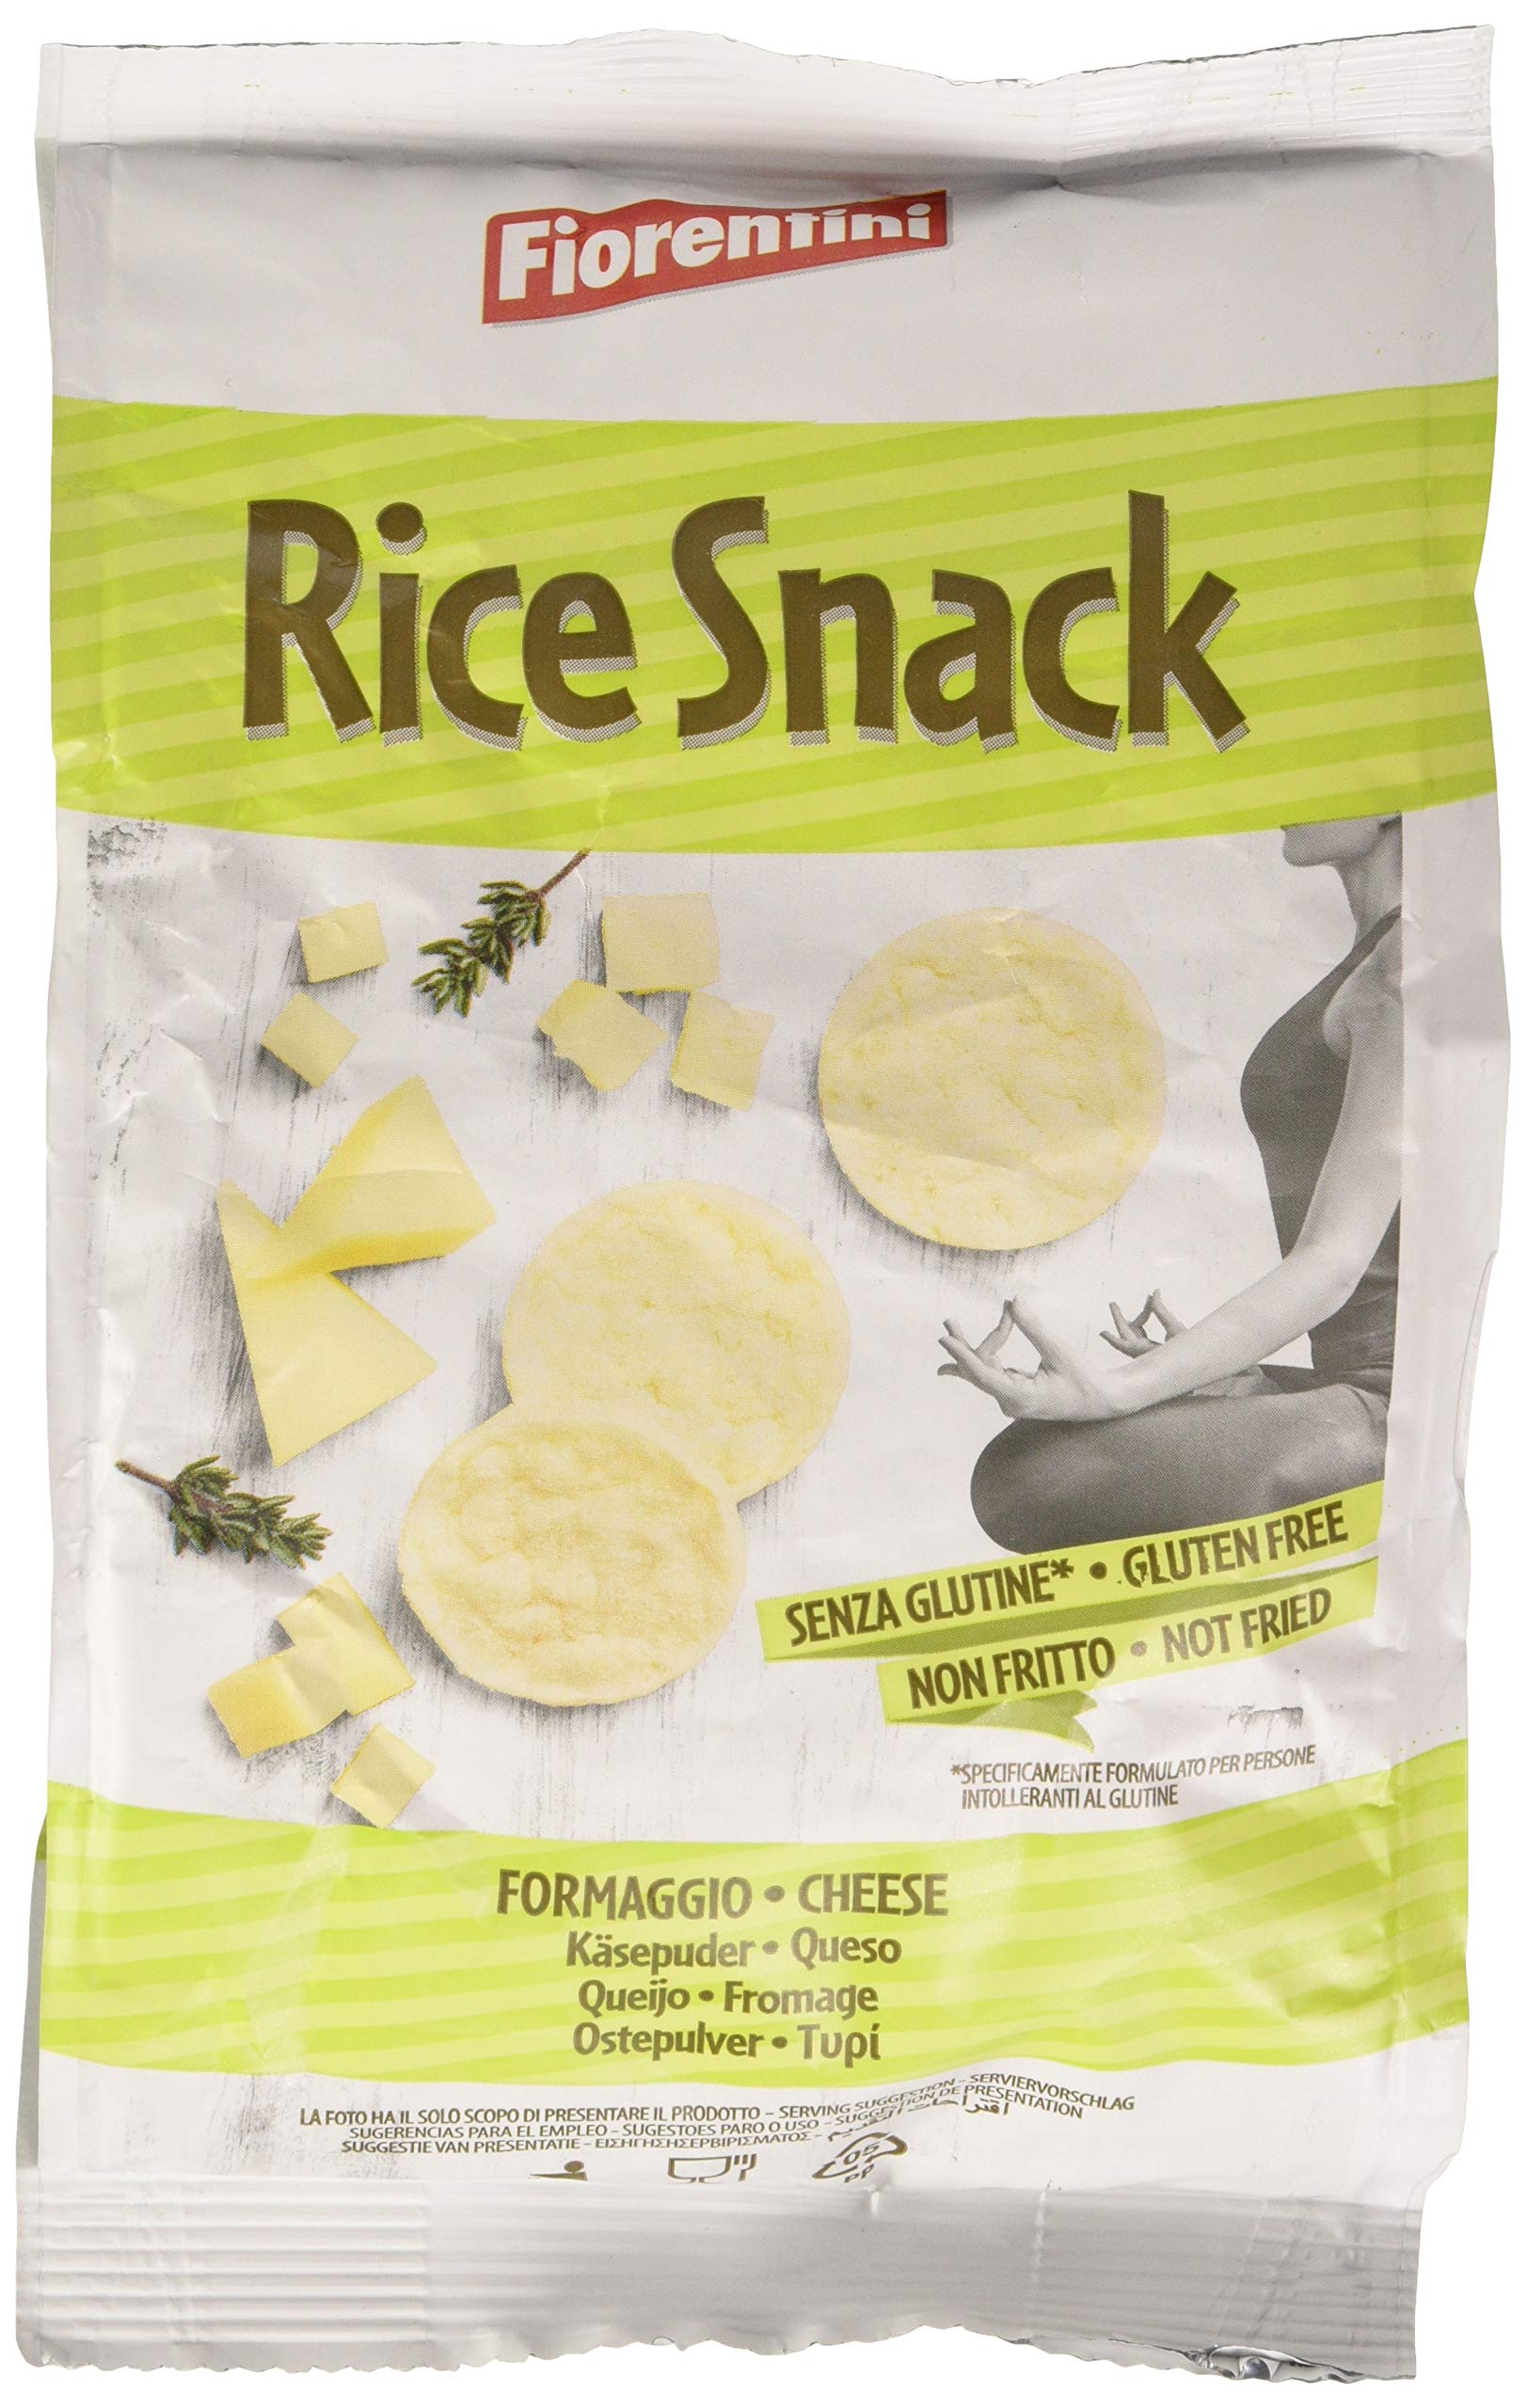 Rice Snack mini gallette di riso al formaggio Fiorentini 40 g -